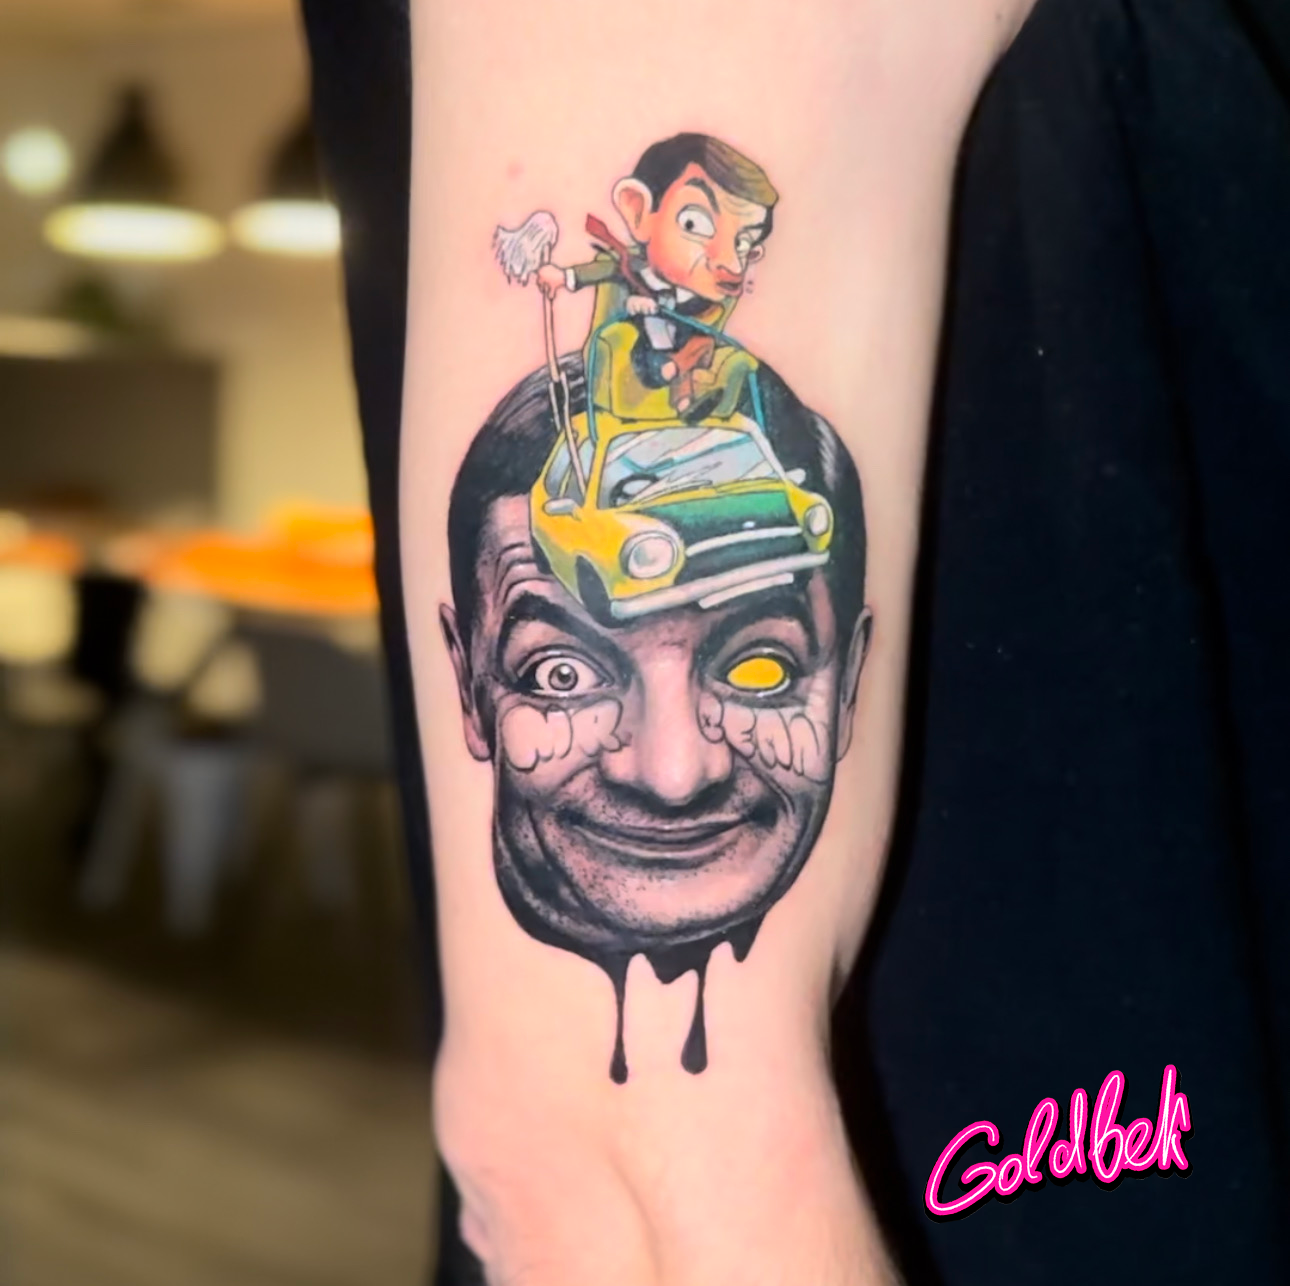 Mr Bean tattoo